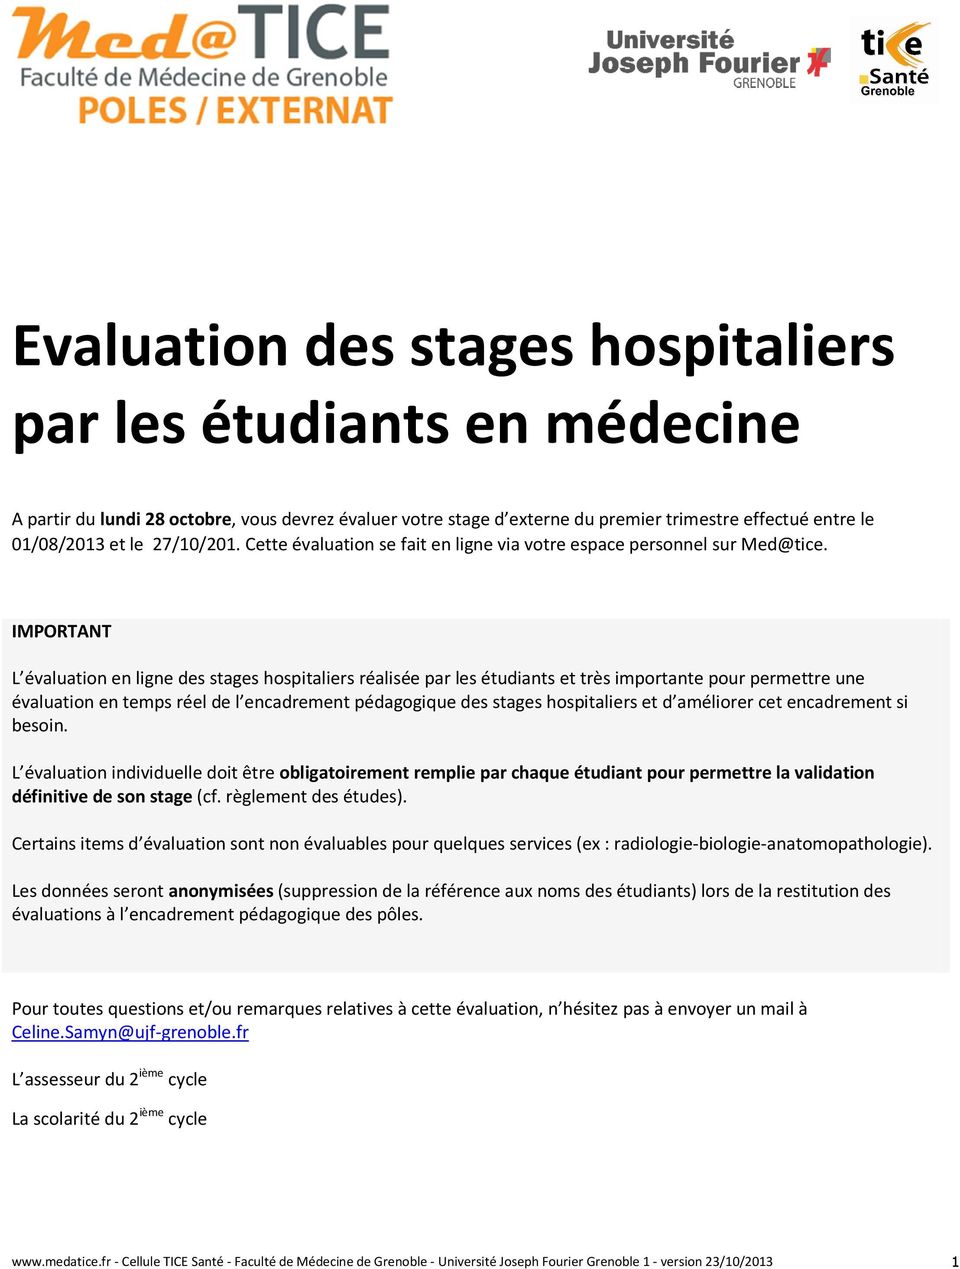 IMPORTANT L évaluation en ligne des stages hospitaliers réalisée par les étudiants et très importante pour permettre une évaluation en temps réel de l encadrement pédagogique des stages hospitaliers